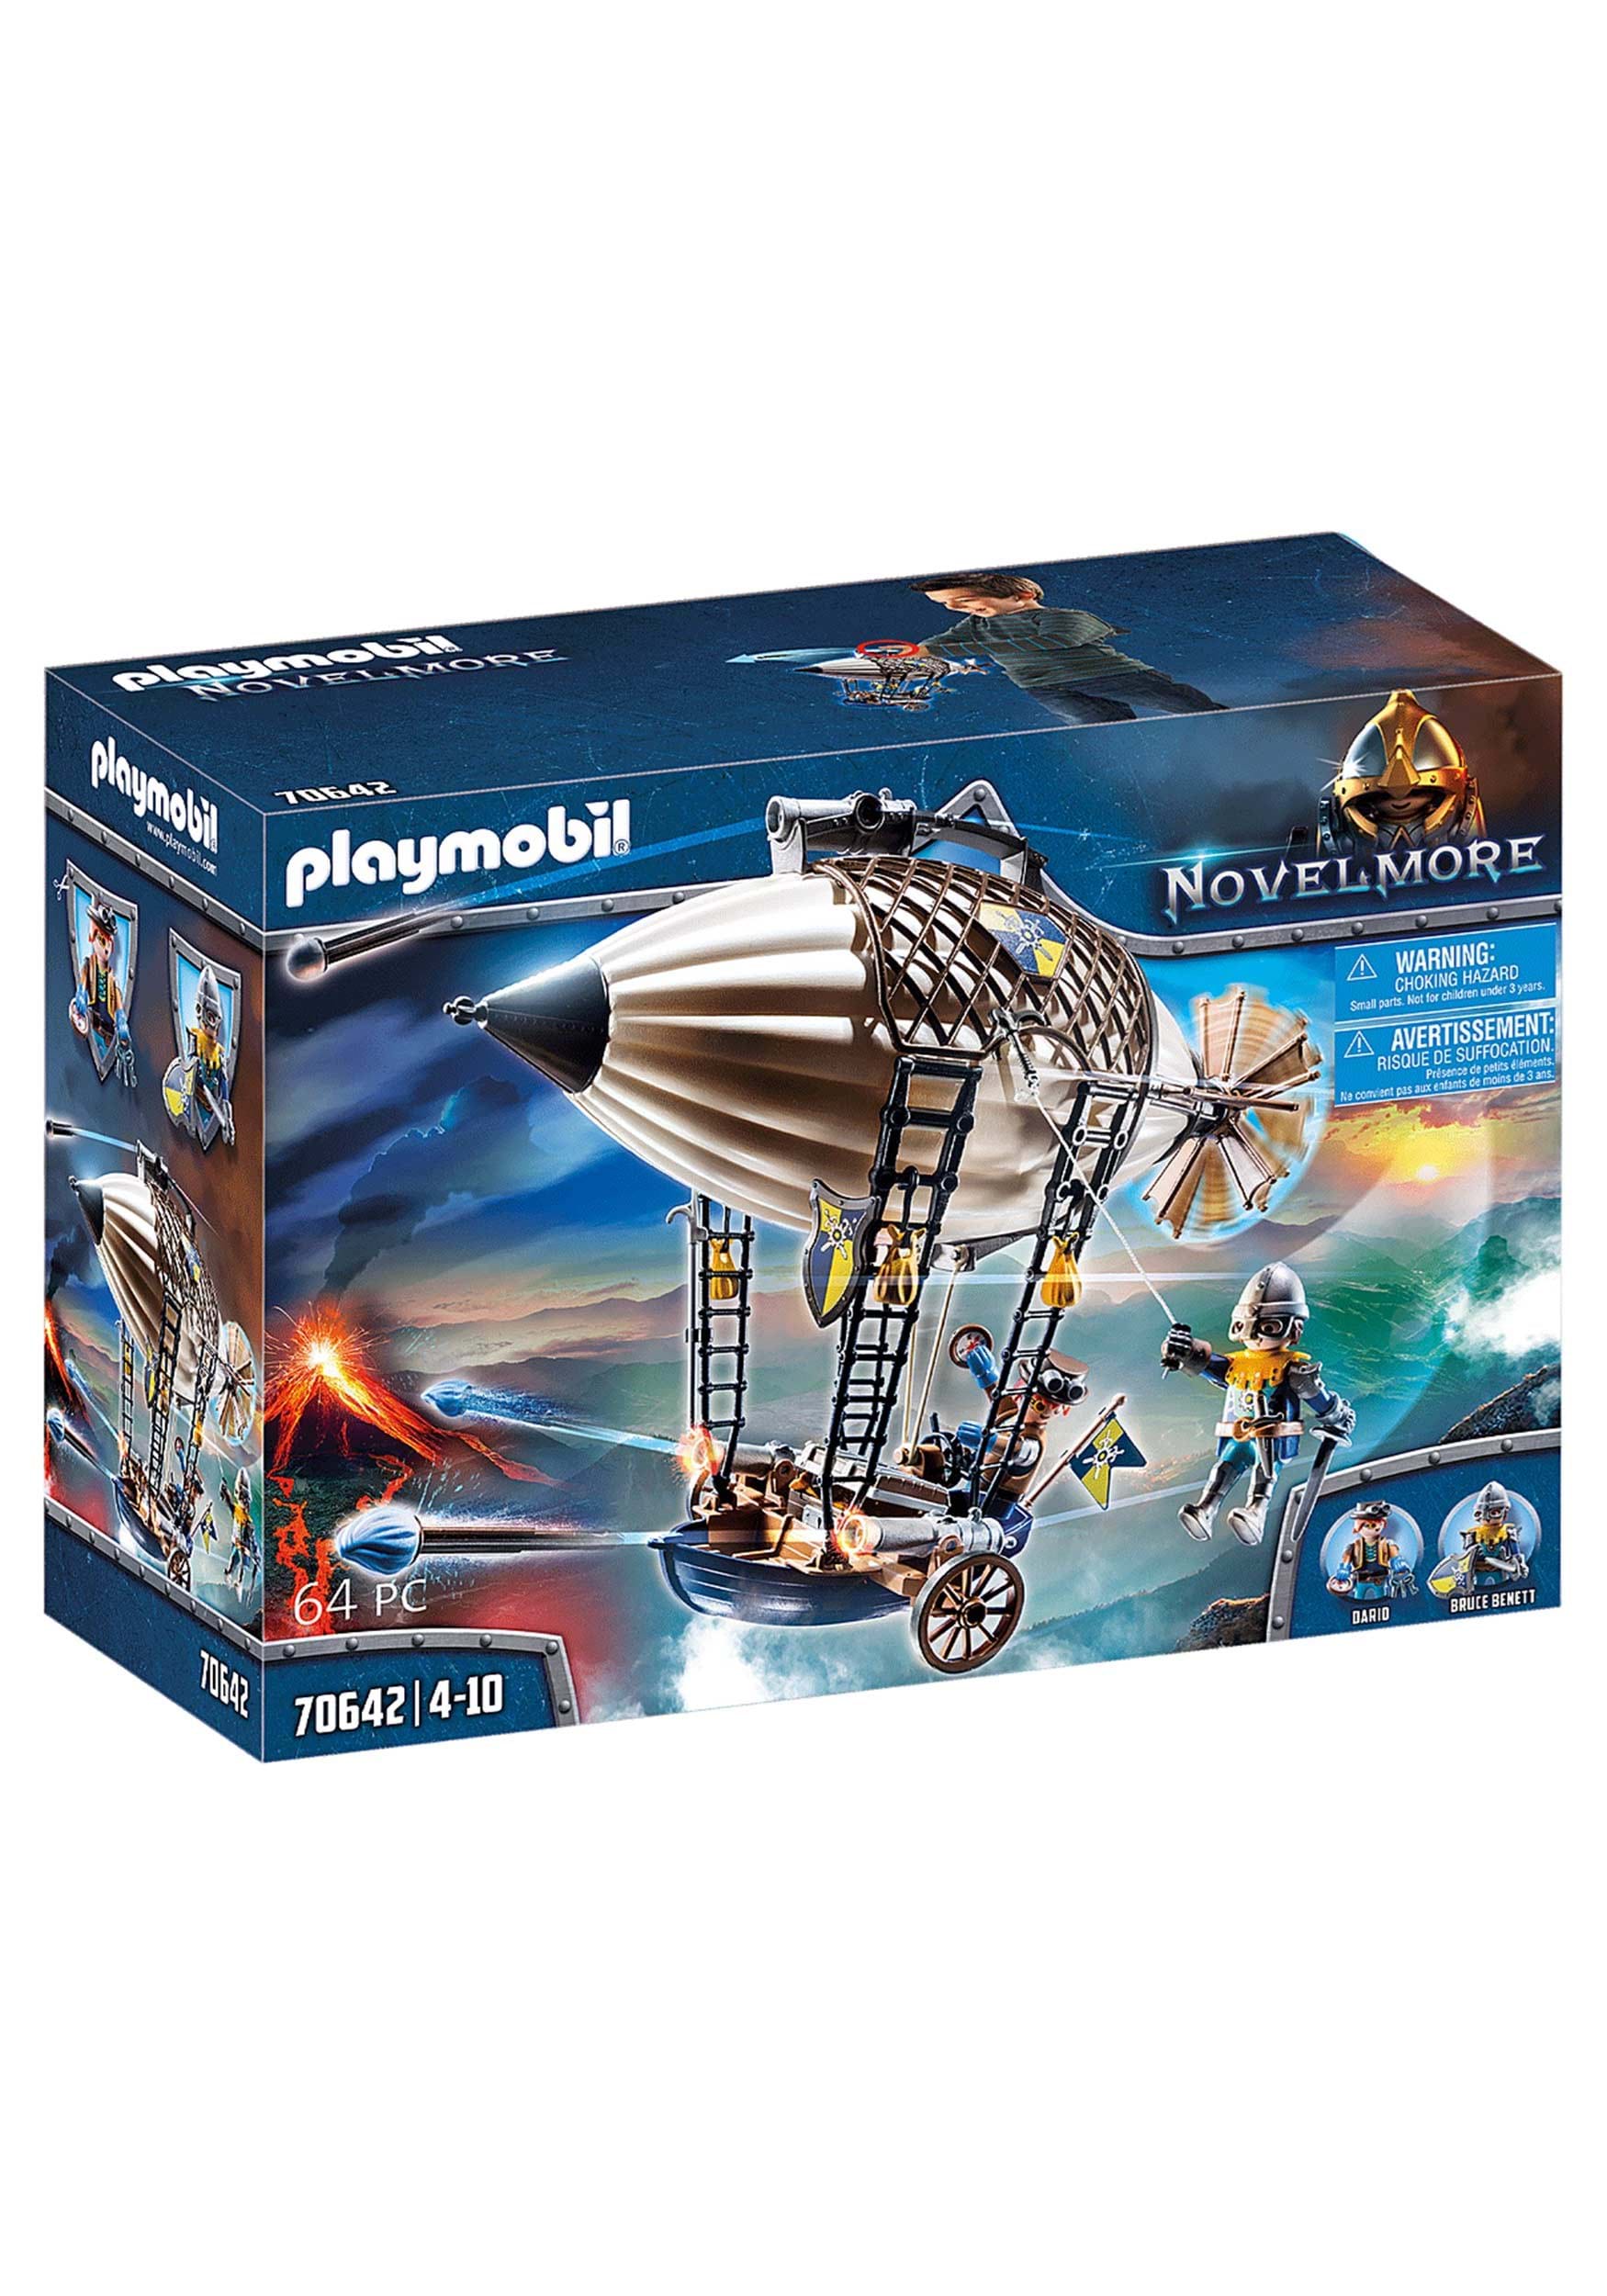 Playmobil - Novelmore Knights Airship Play Set